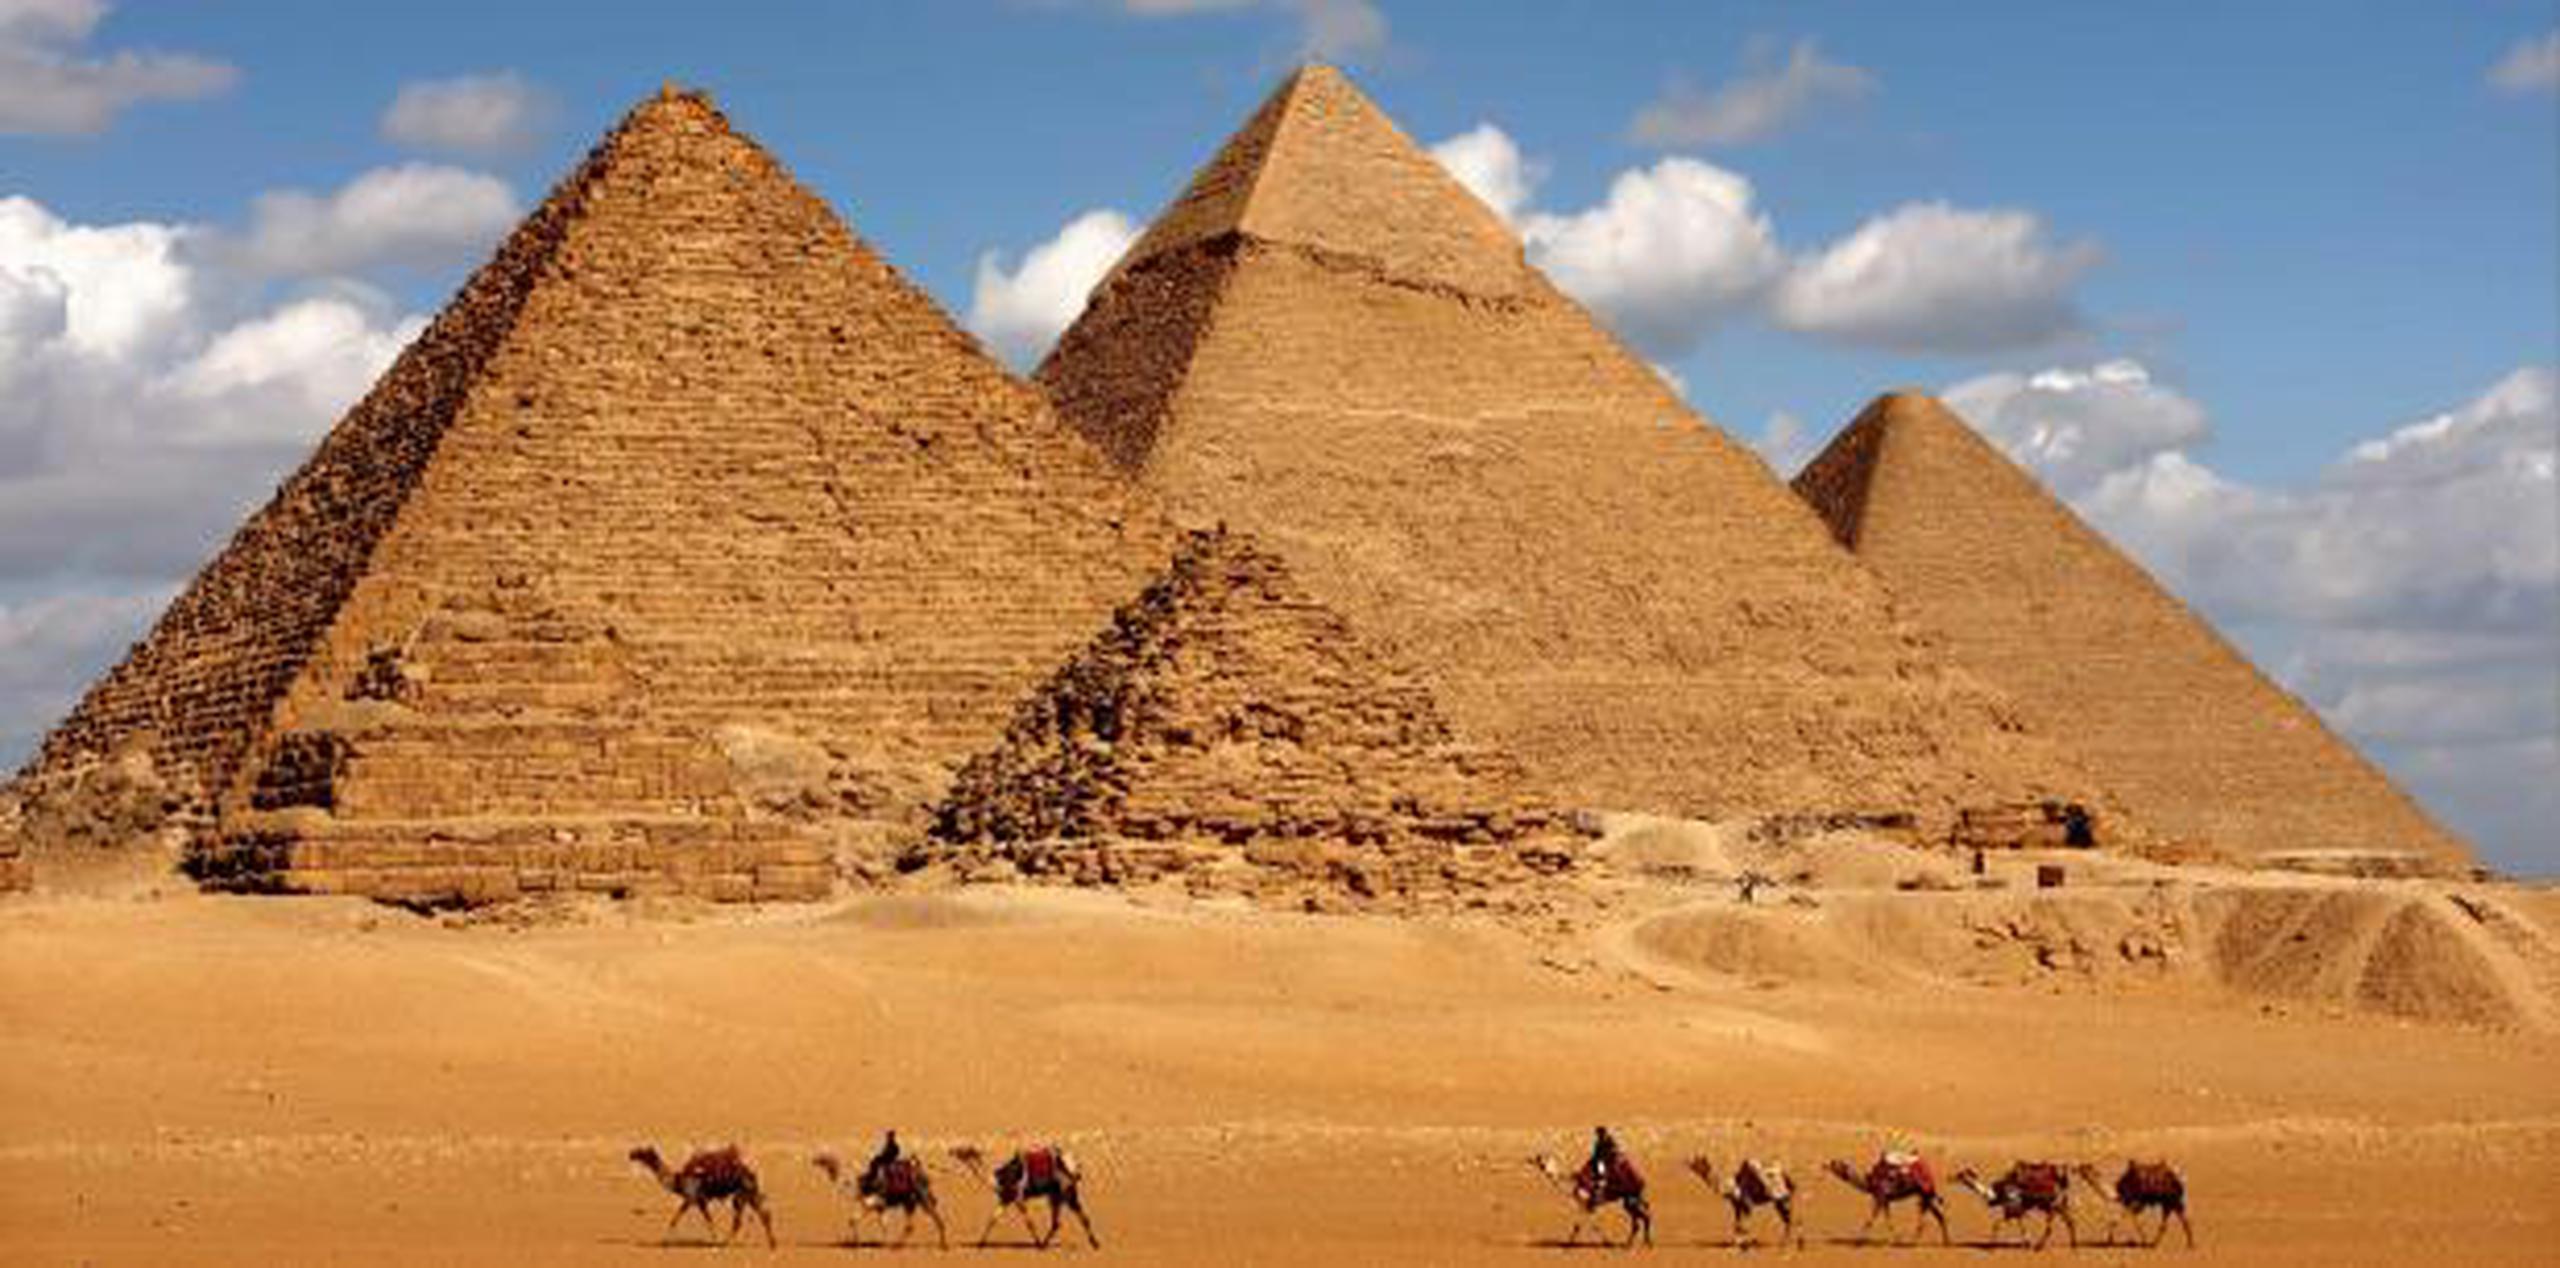 Egipto anuncia a menudo nuevos descubrimientos con la esperanza de animar el sector turístico. (Archivo)